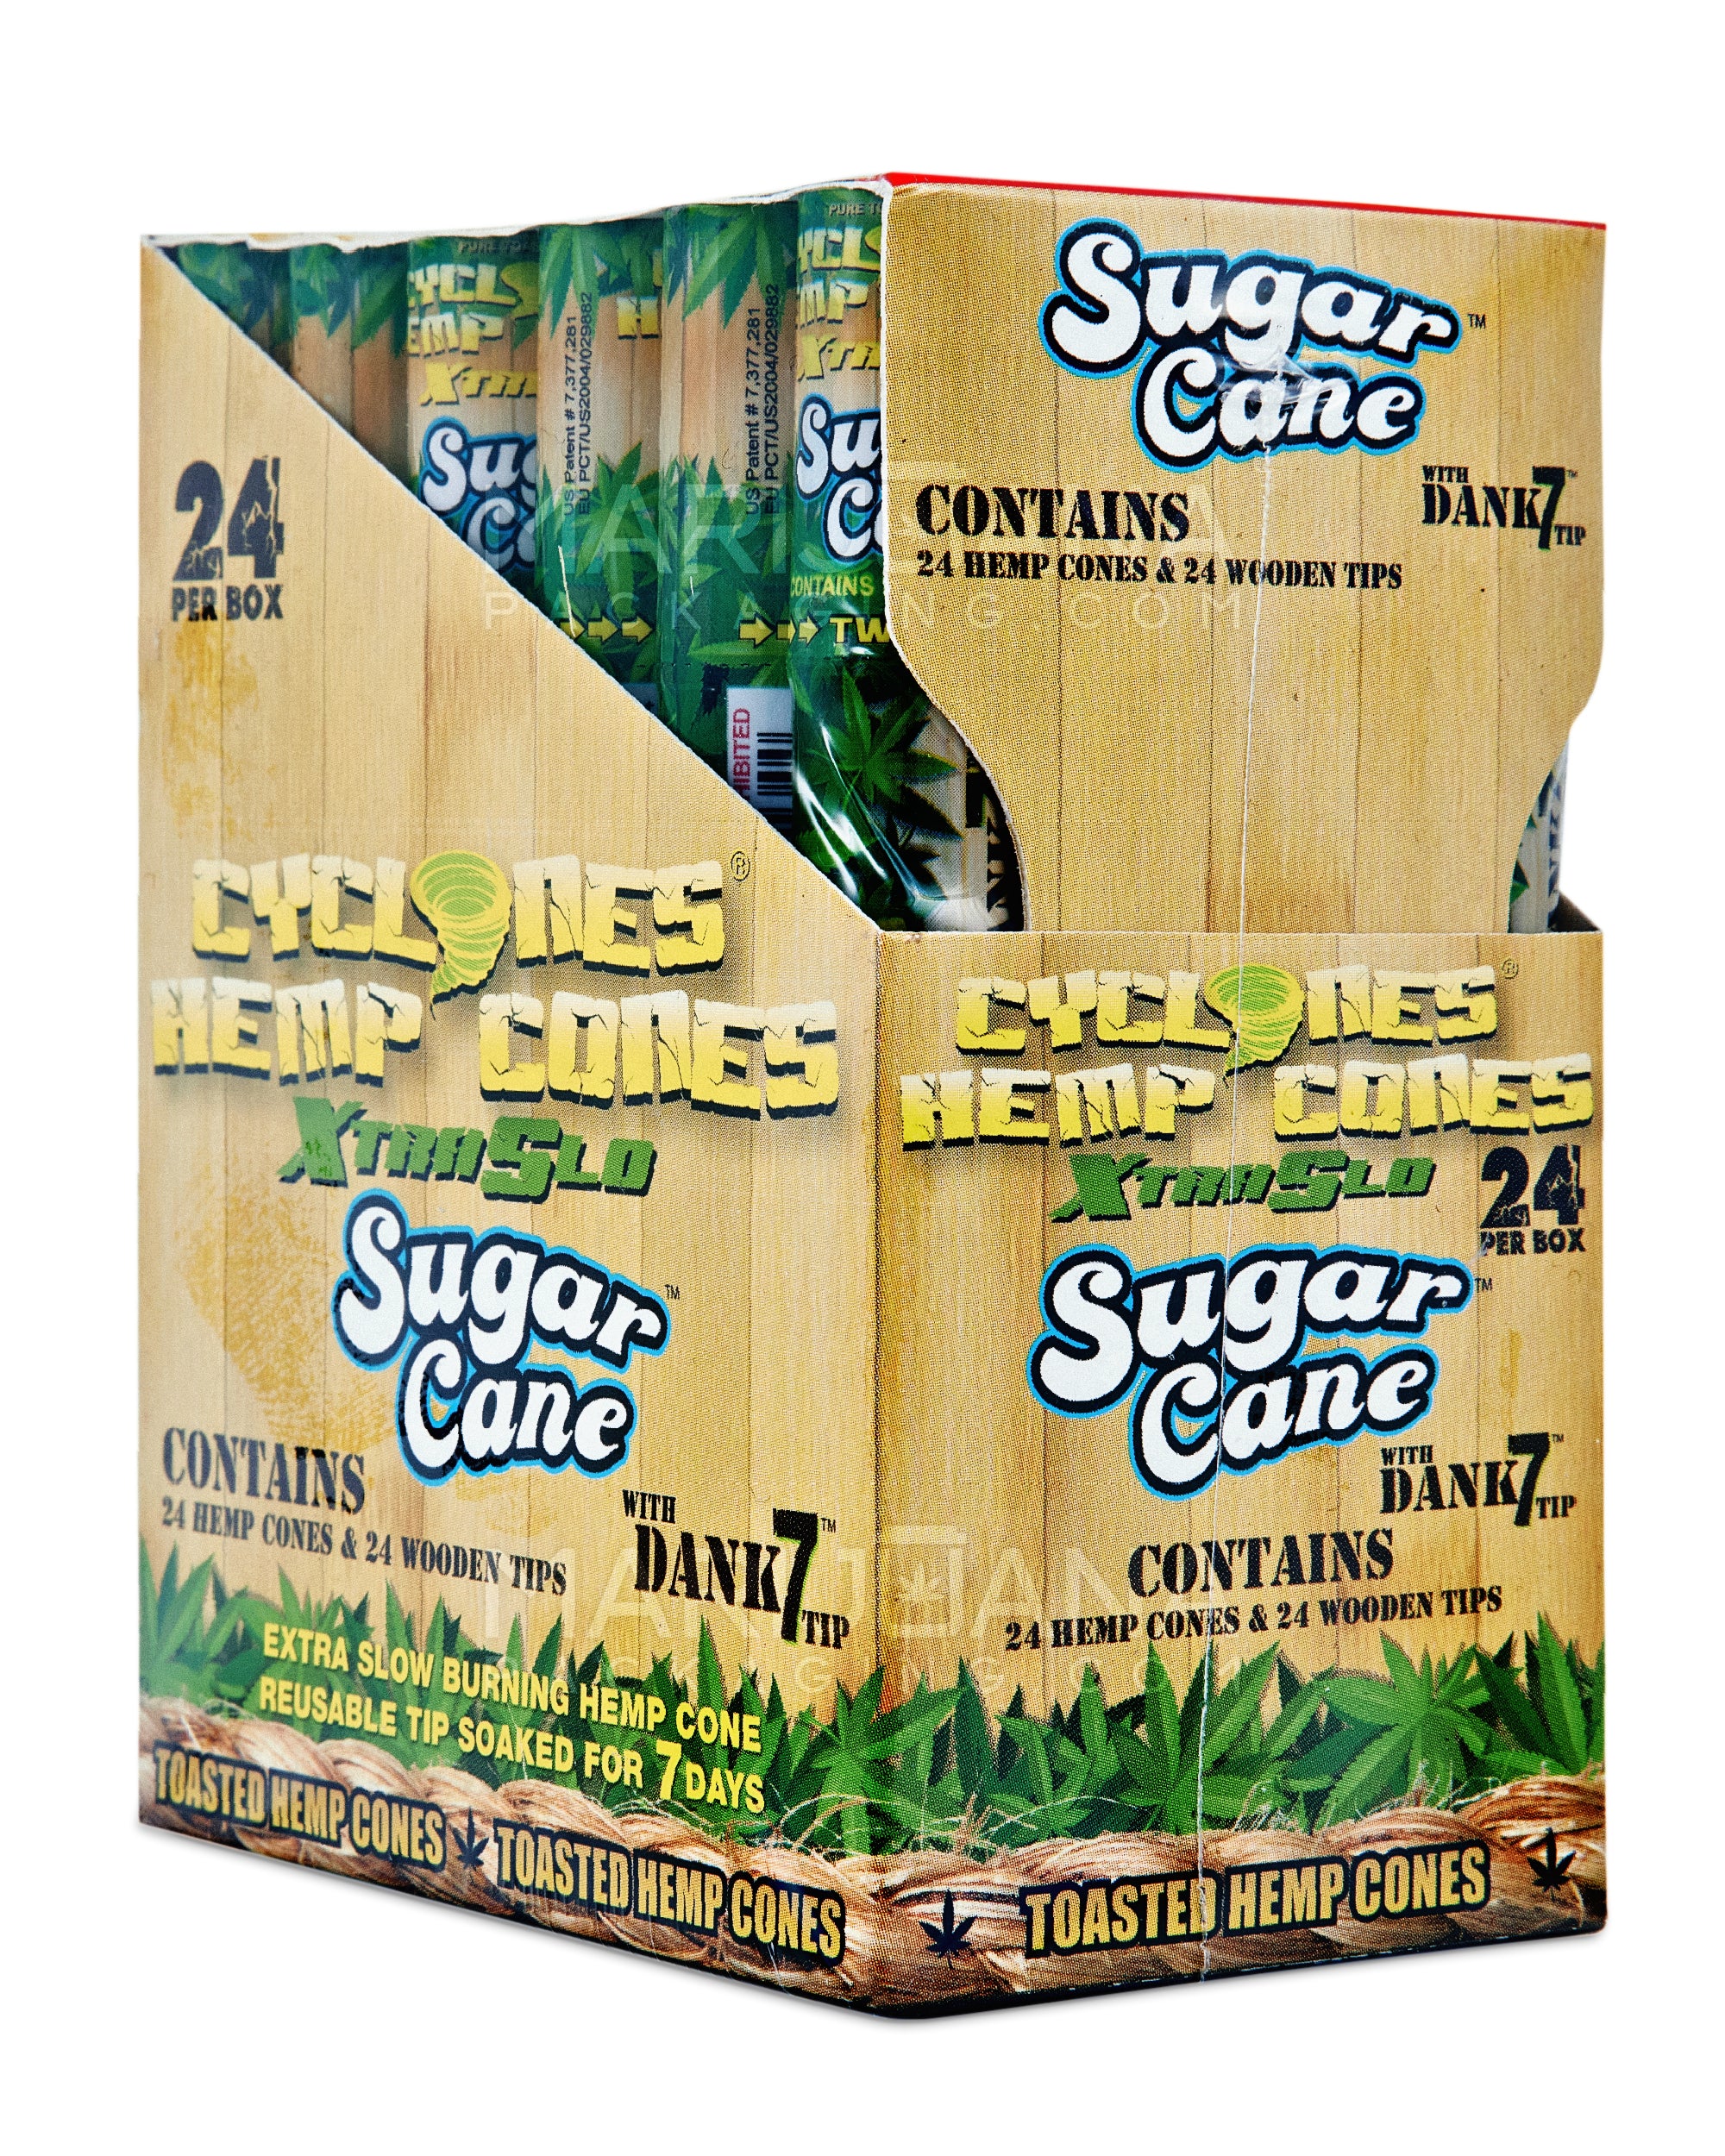 CYCLONES | 'Retail Display' Xtra Slow Burn Hemp Cones | 109mm - Sugar Cane - 24 Count - 5